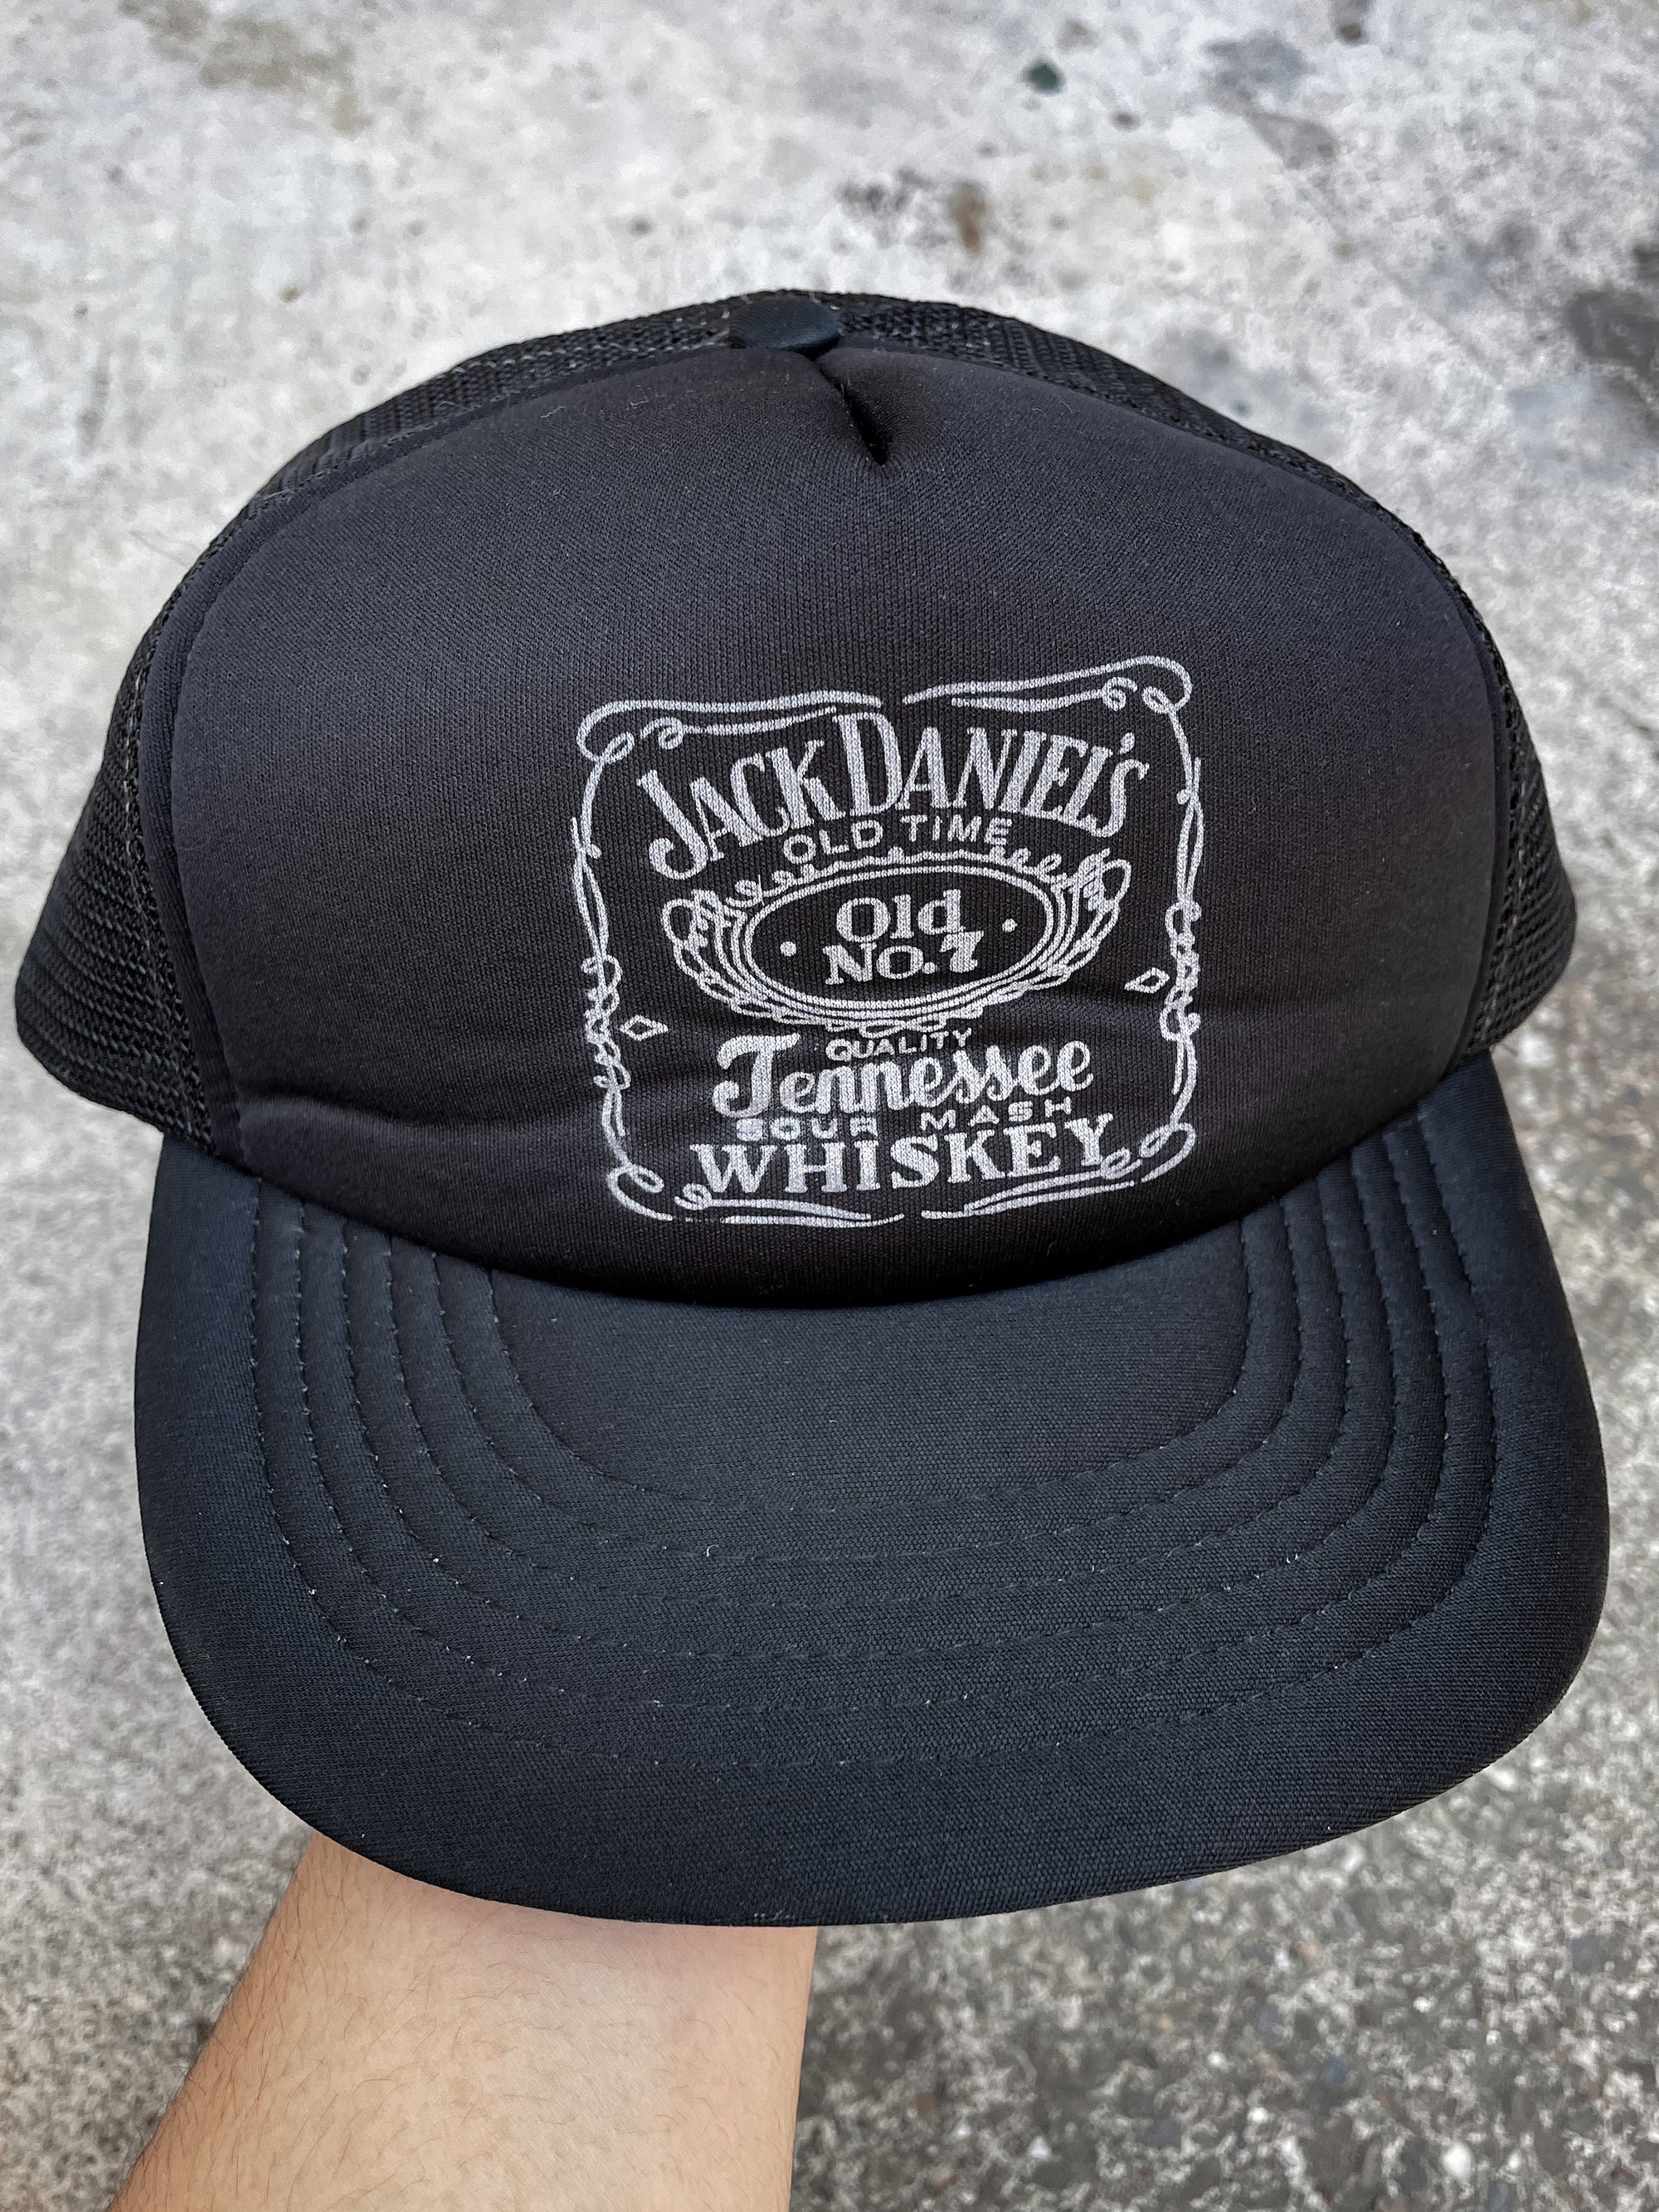 1990s “Jack Daniels” Trucker Hat